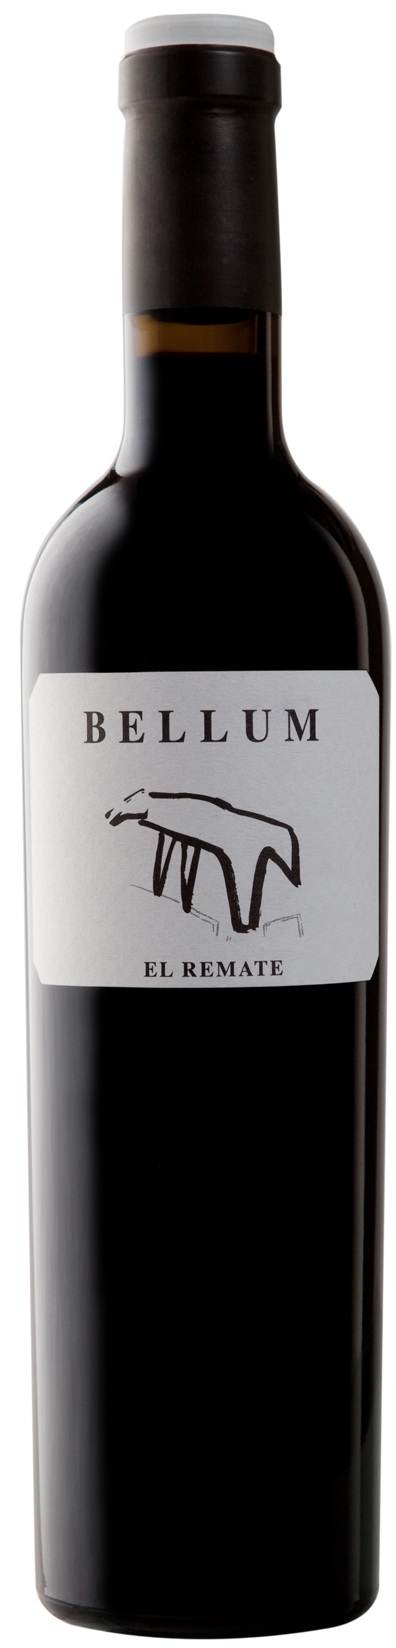 Logo del vino Bellum "El Remate"